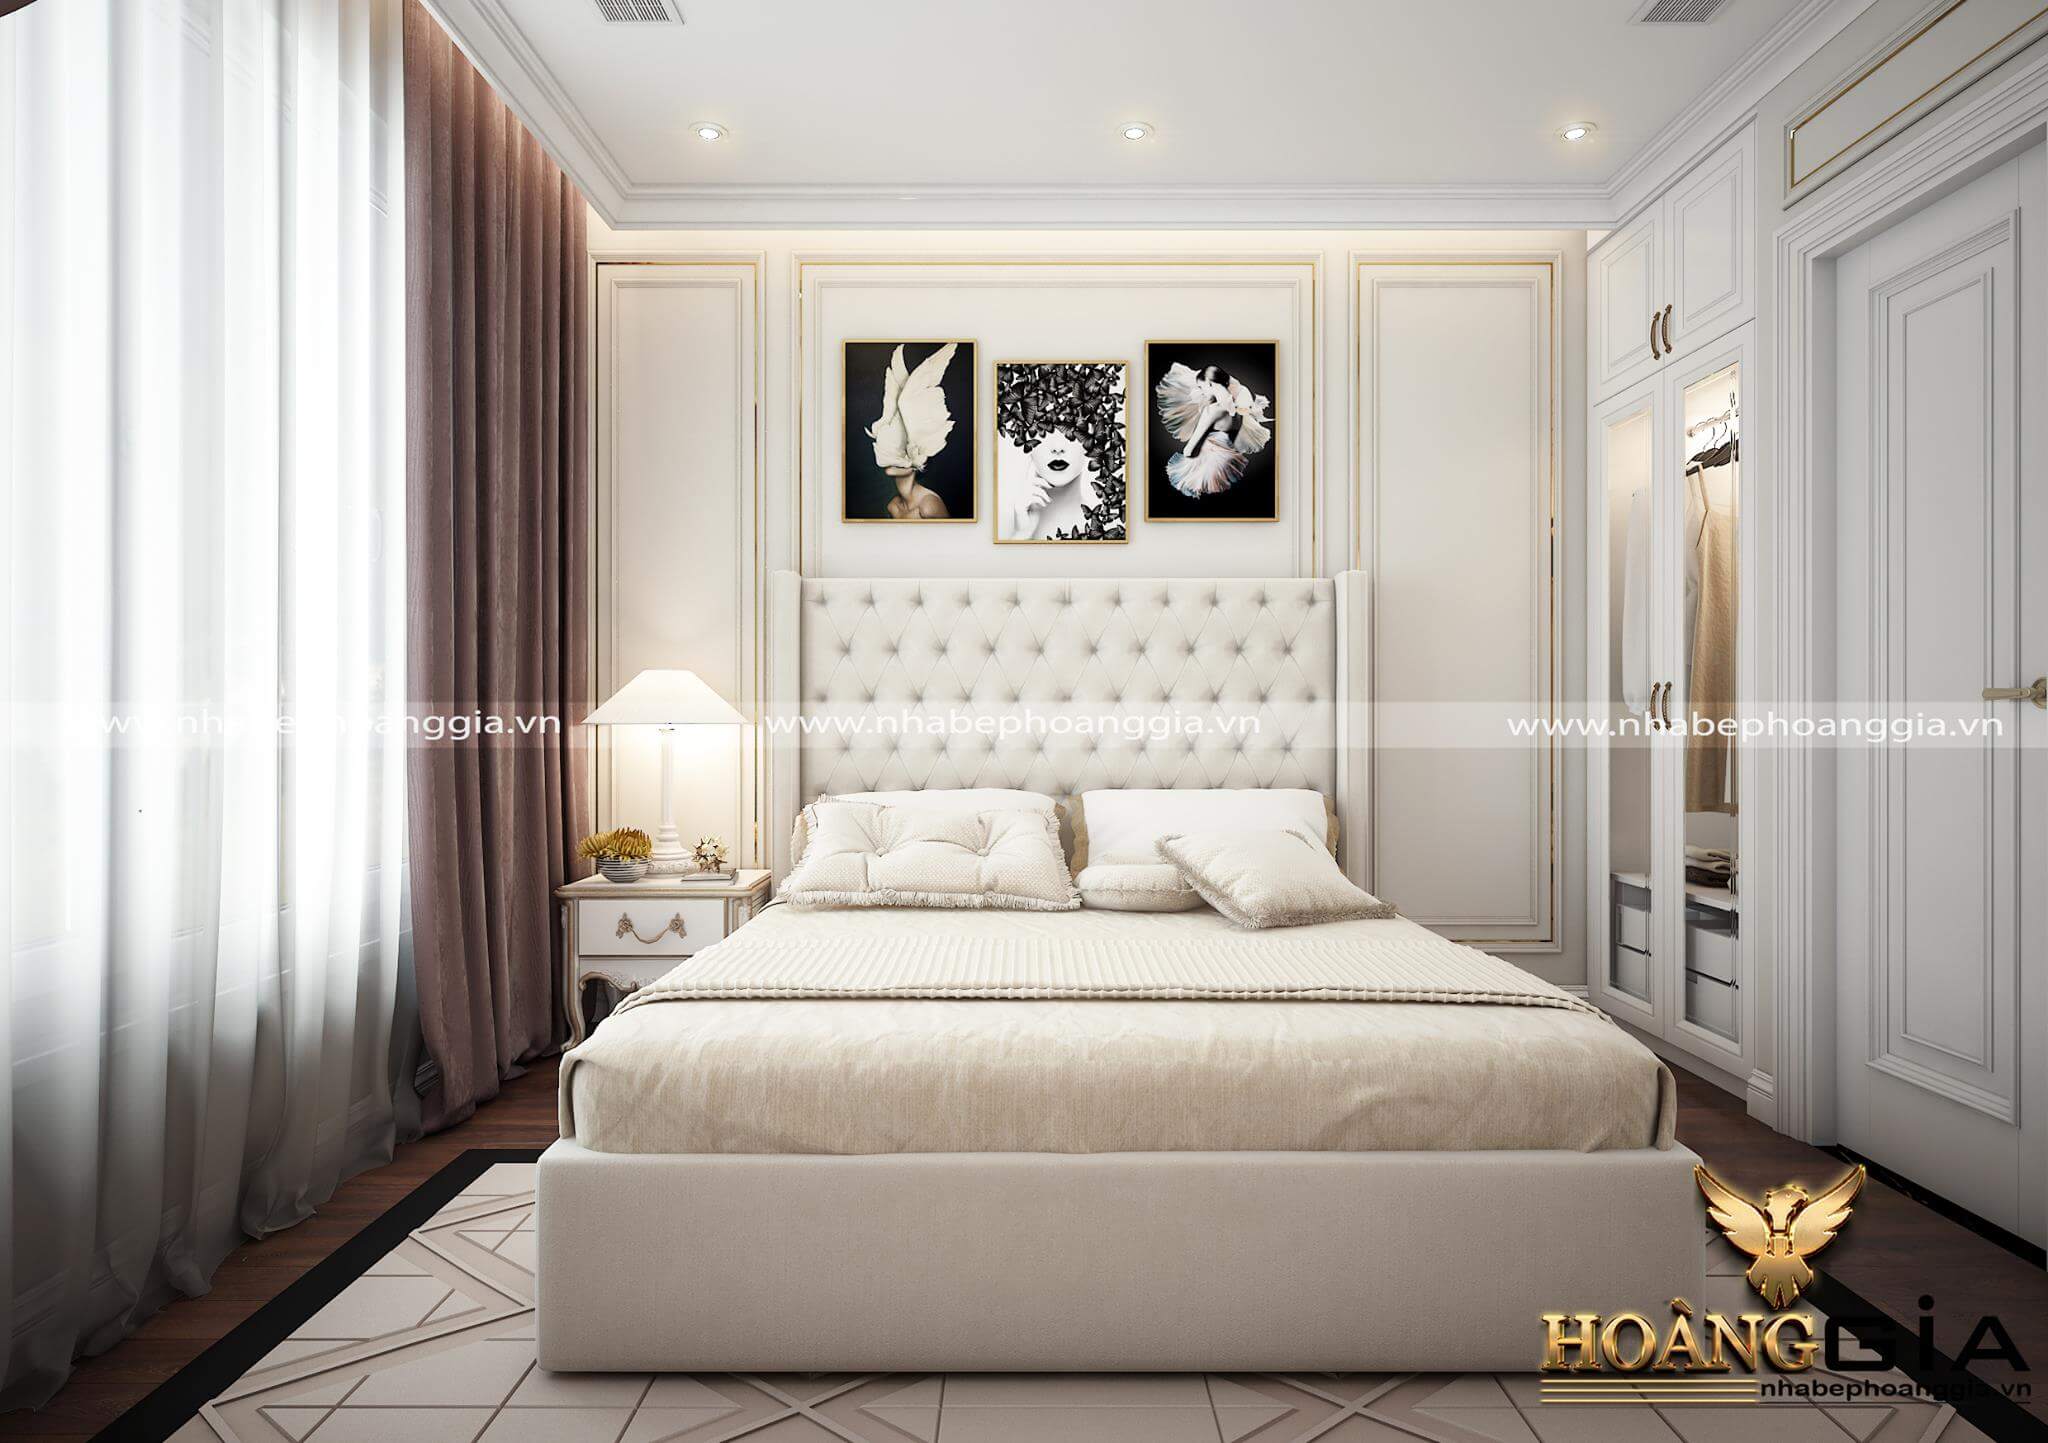 Cập nhật nhiều hơn 98 trang trí phòng ngủ kiểu cổ điển mới nhất   thdonghoadian